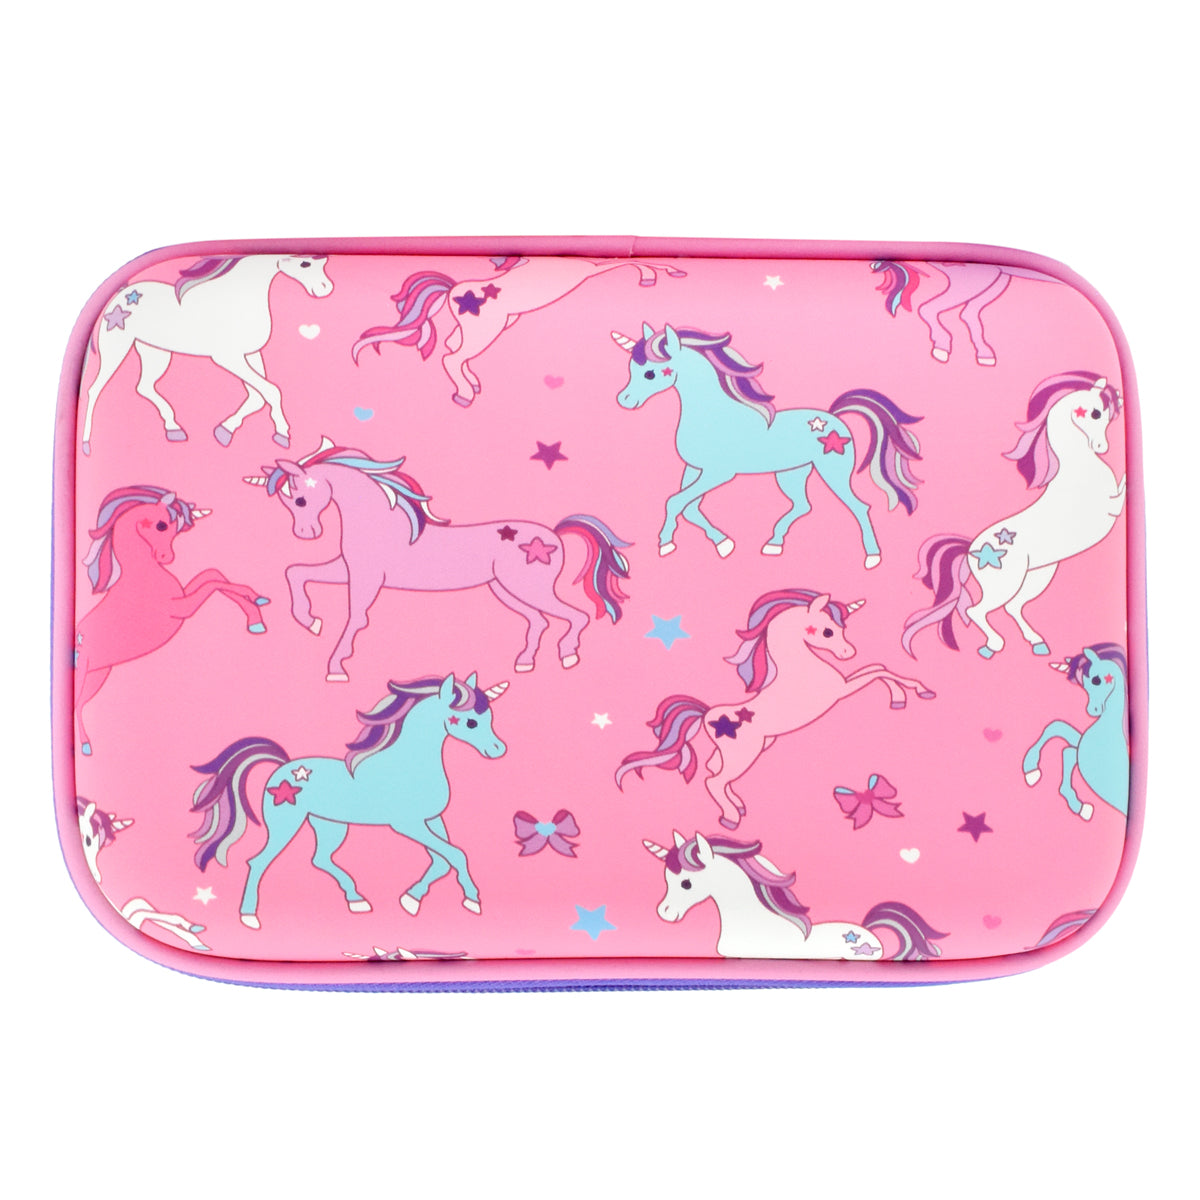 Lapicera escolar para niña Peschelle rígida con diseño de unicornios color rosa